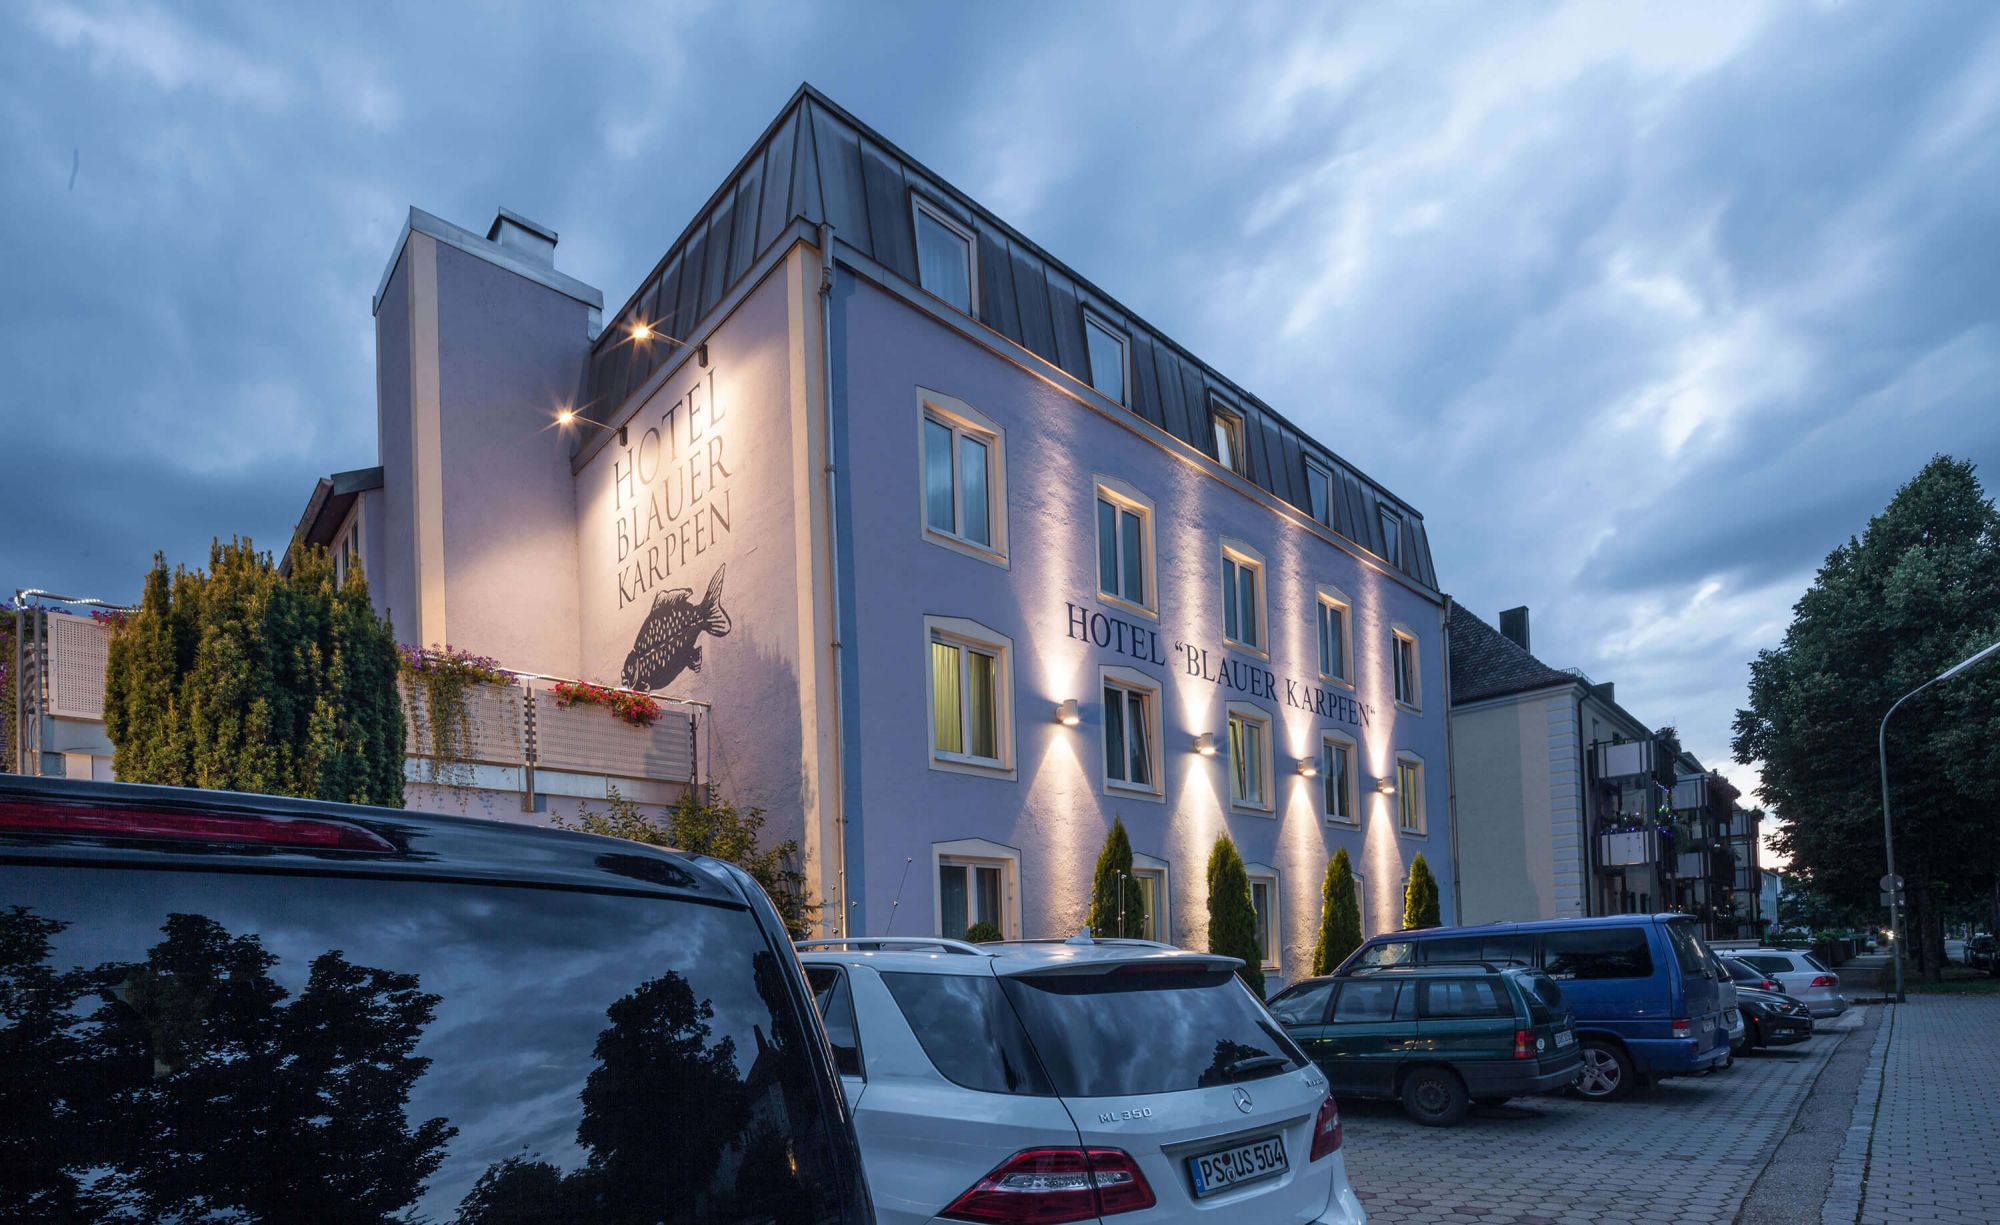 Hotel in Oberschleißheim - übernachten in der Umgebung von München - Hotel Blauer Karpfen